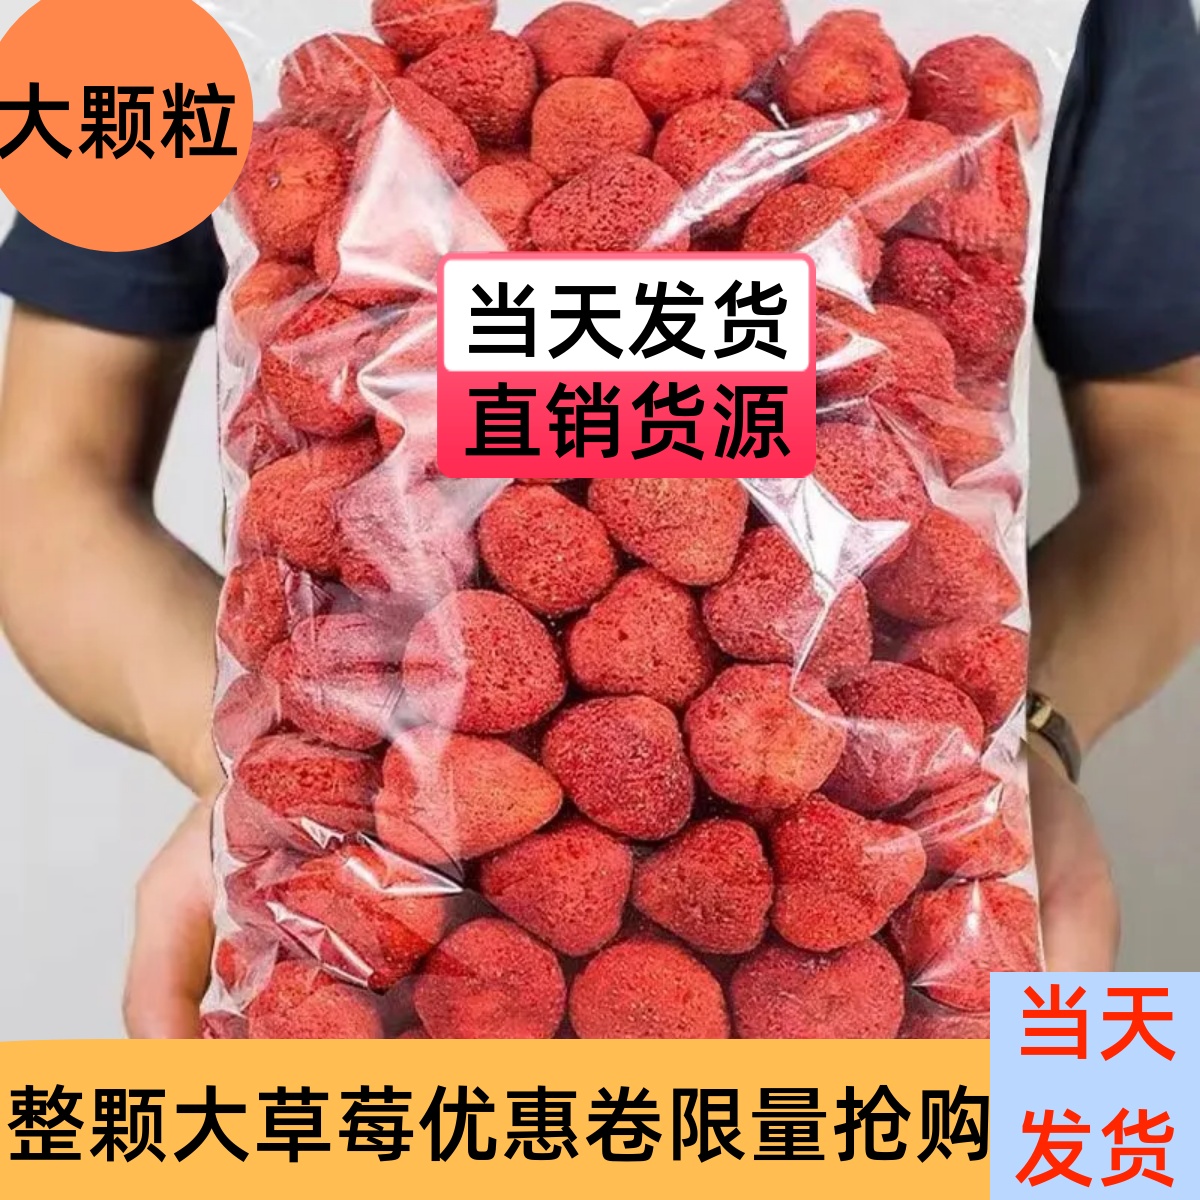 冻干草莓无防腐剂脆脆的当天发货